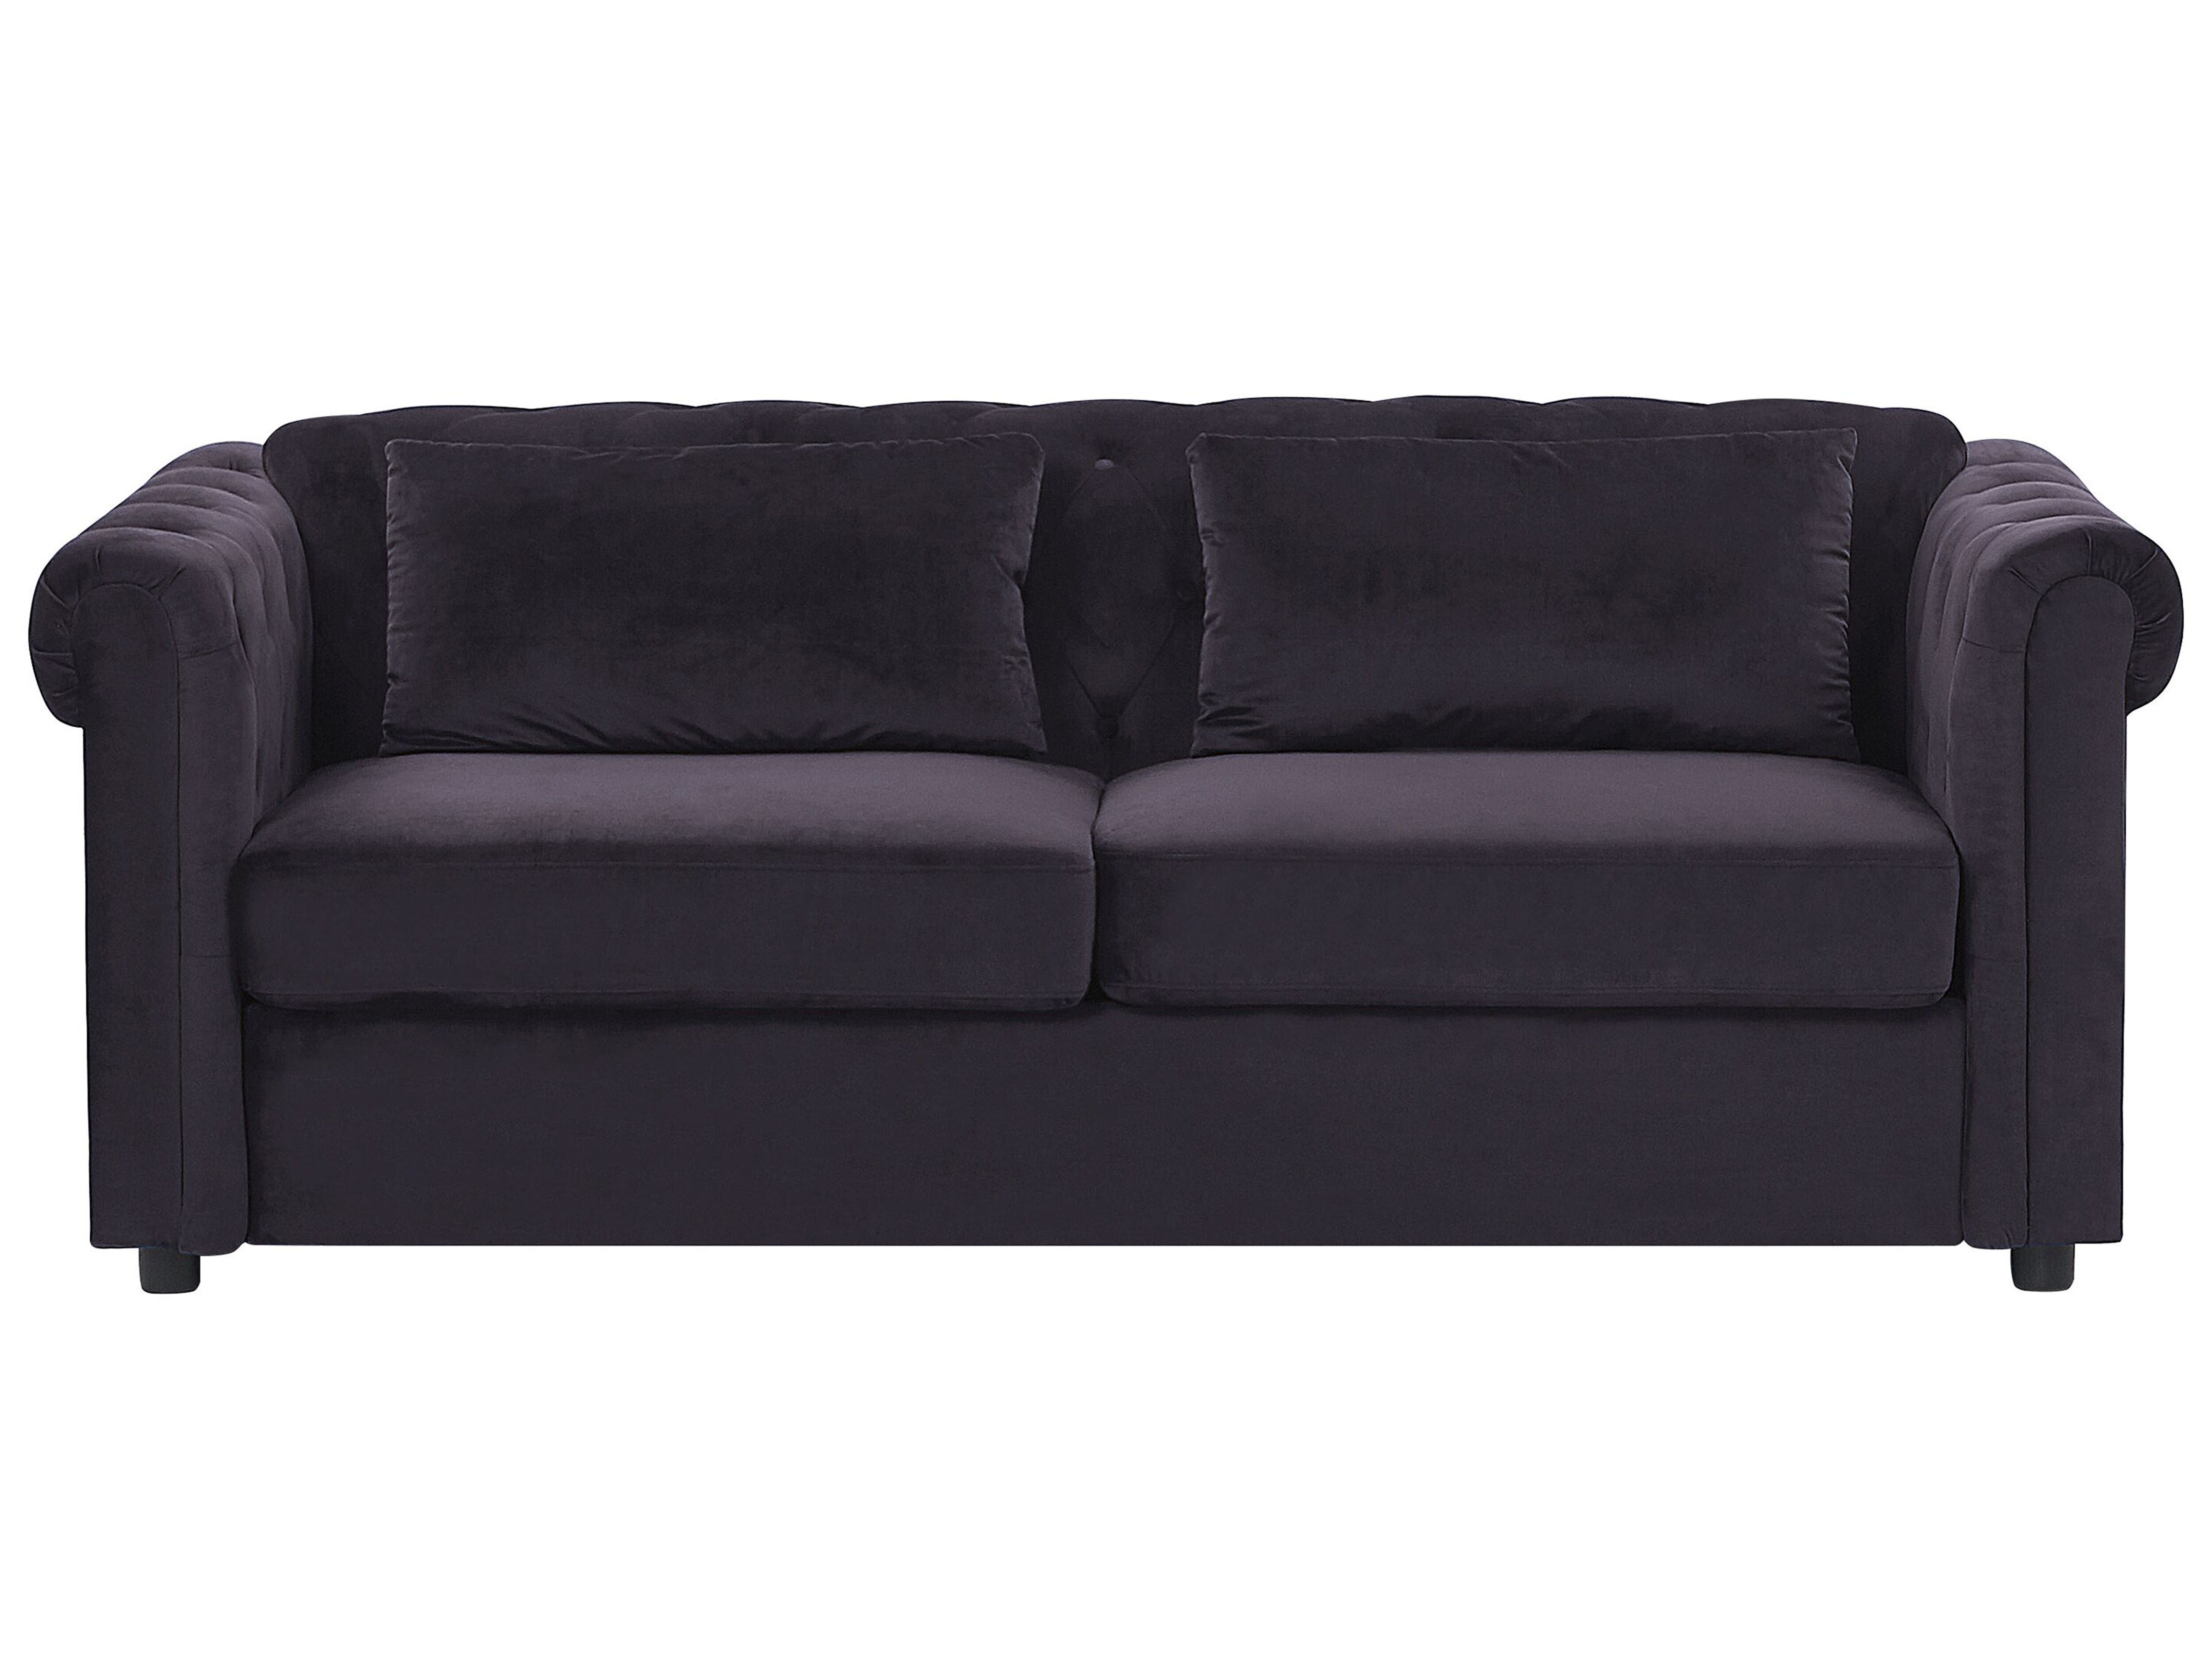 Velvet Sofa Bed Black Chesterfield